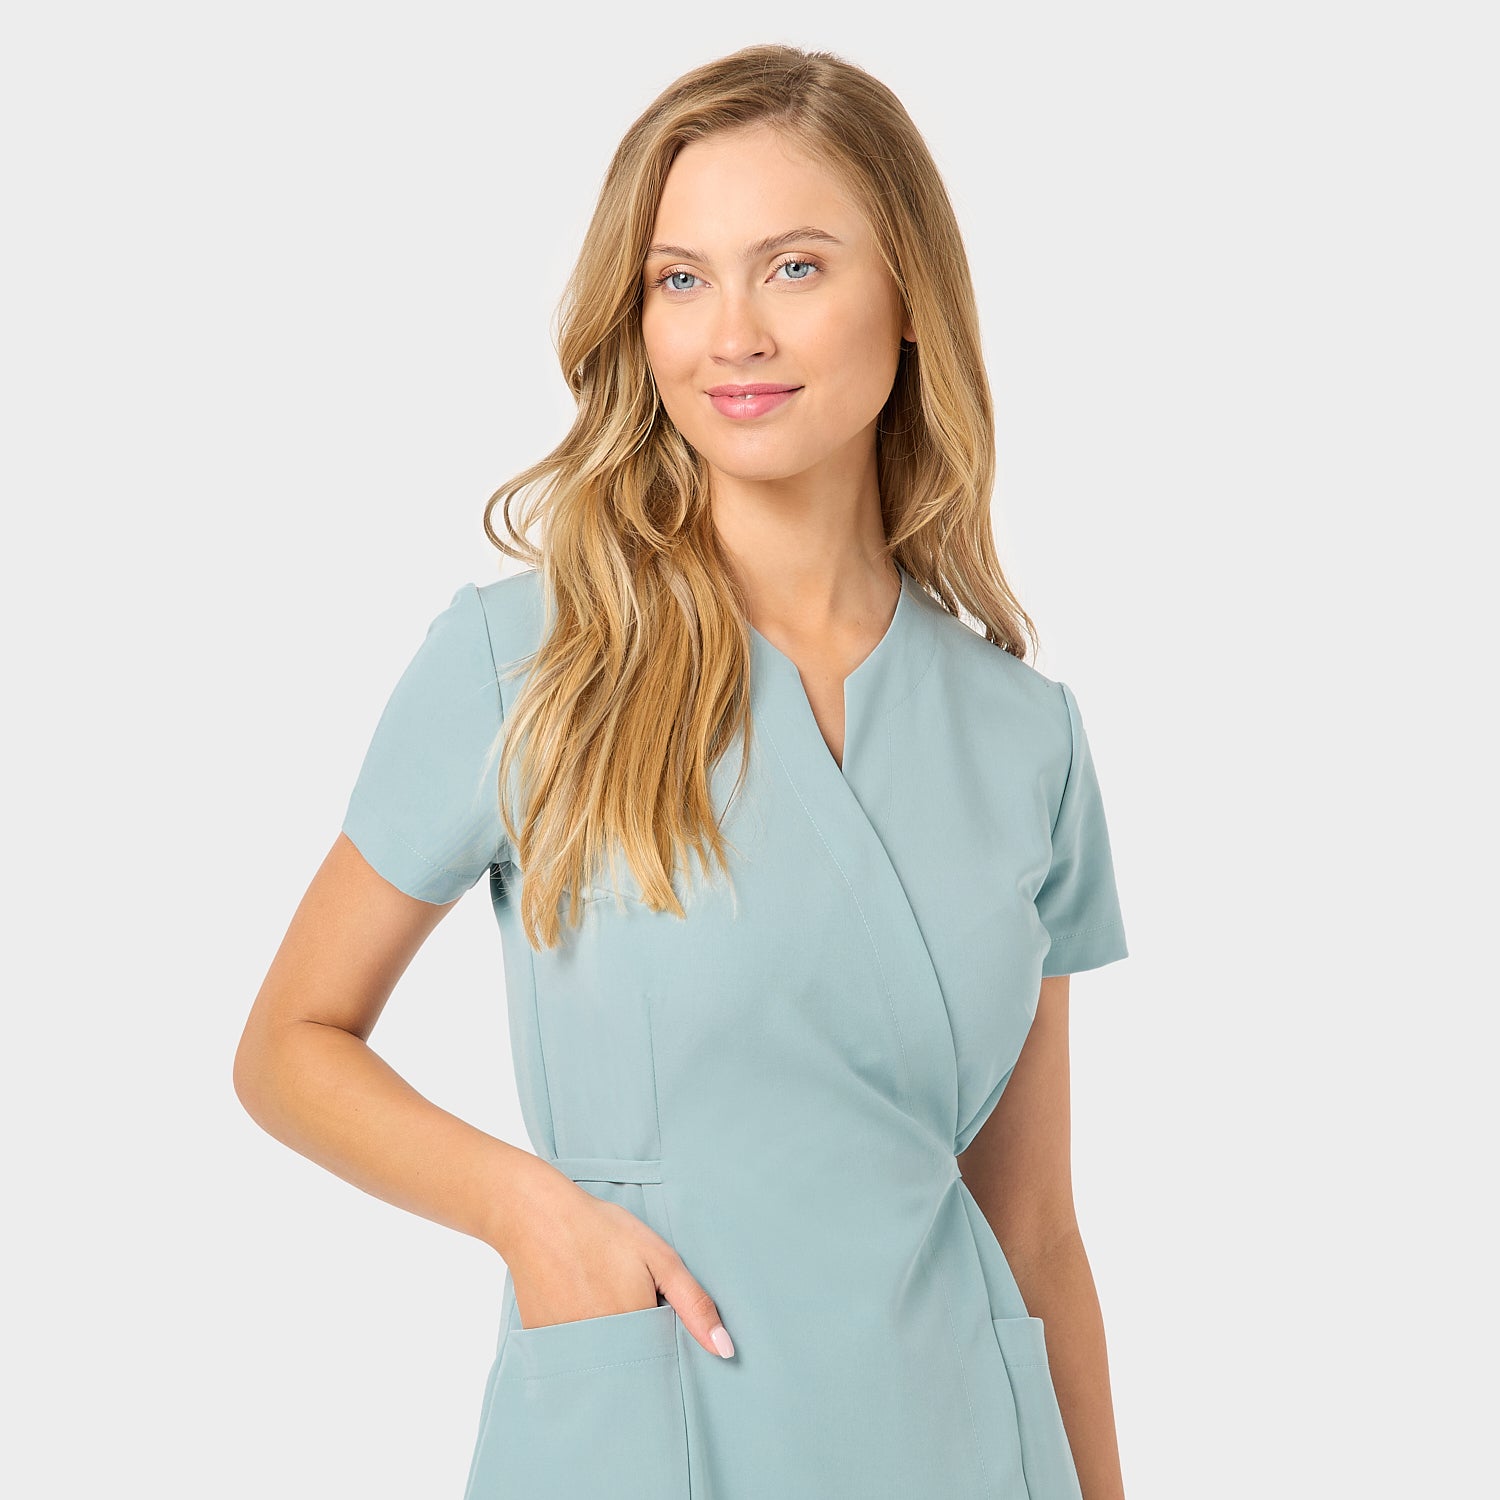 Sukienka medyczna KATE Dusty Blue - detale kieszeni: Zbliżenie na kieszenie sukienki medycznej w kolorze Dusty Blue, podkreślające funkcjonalność i praktyczność w codziennej pracy.